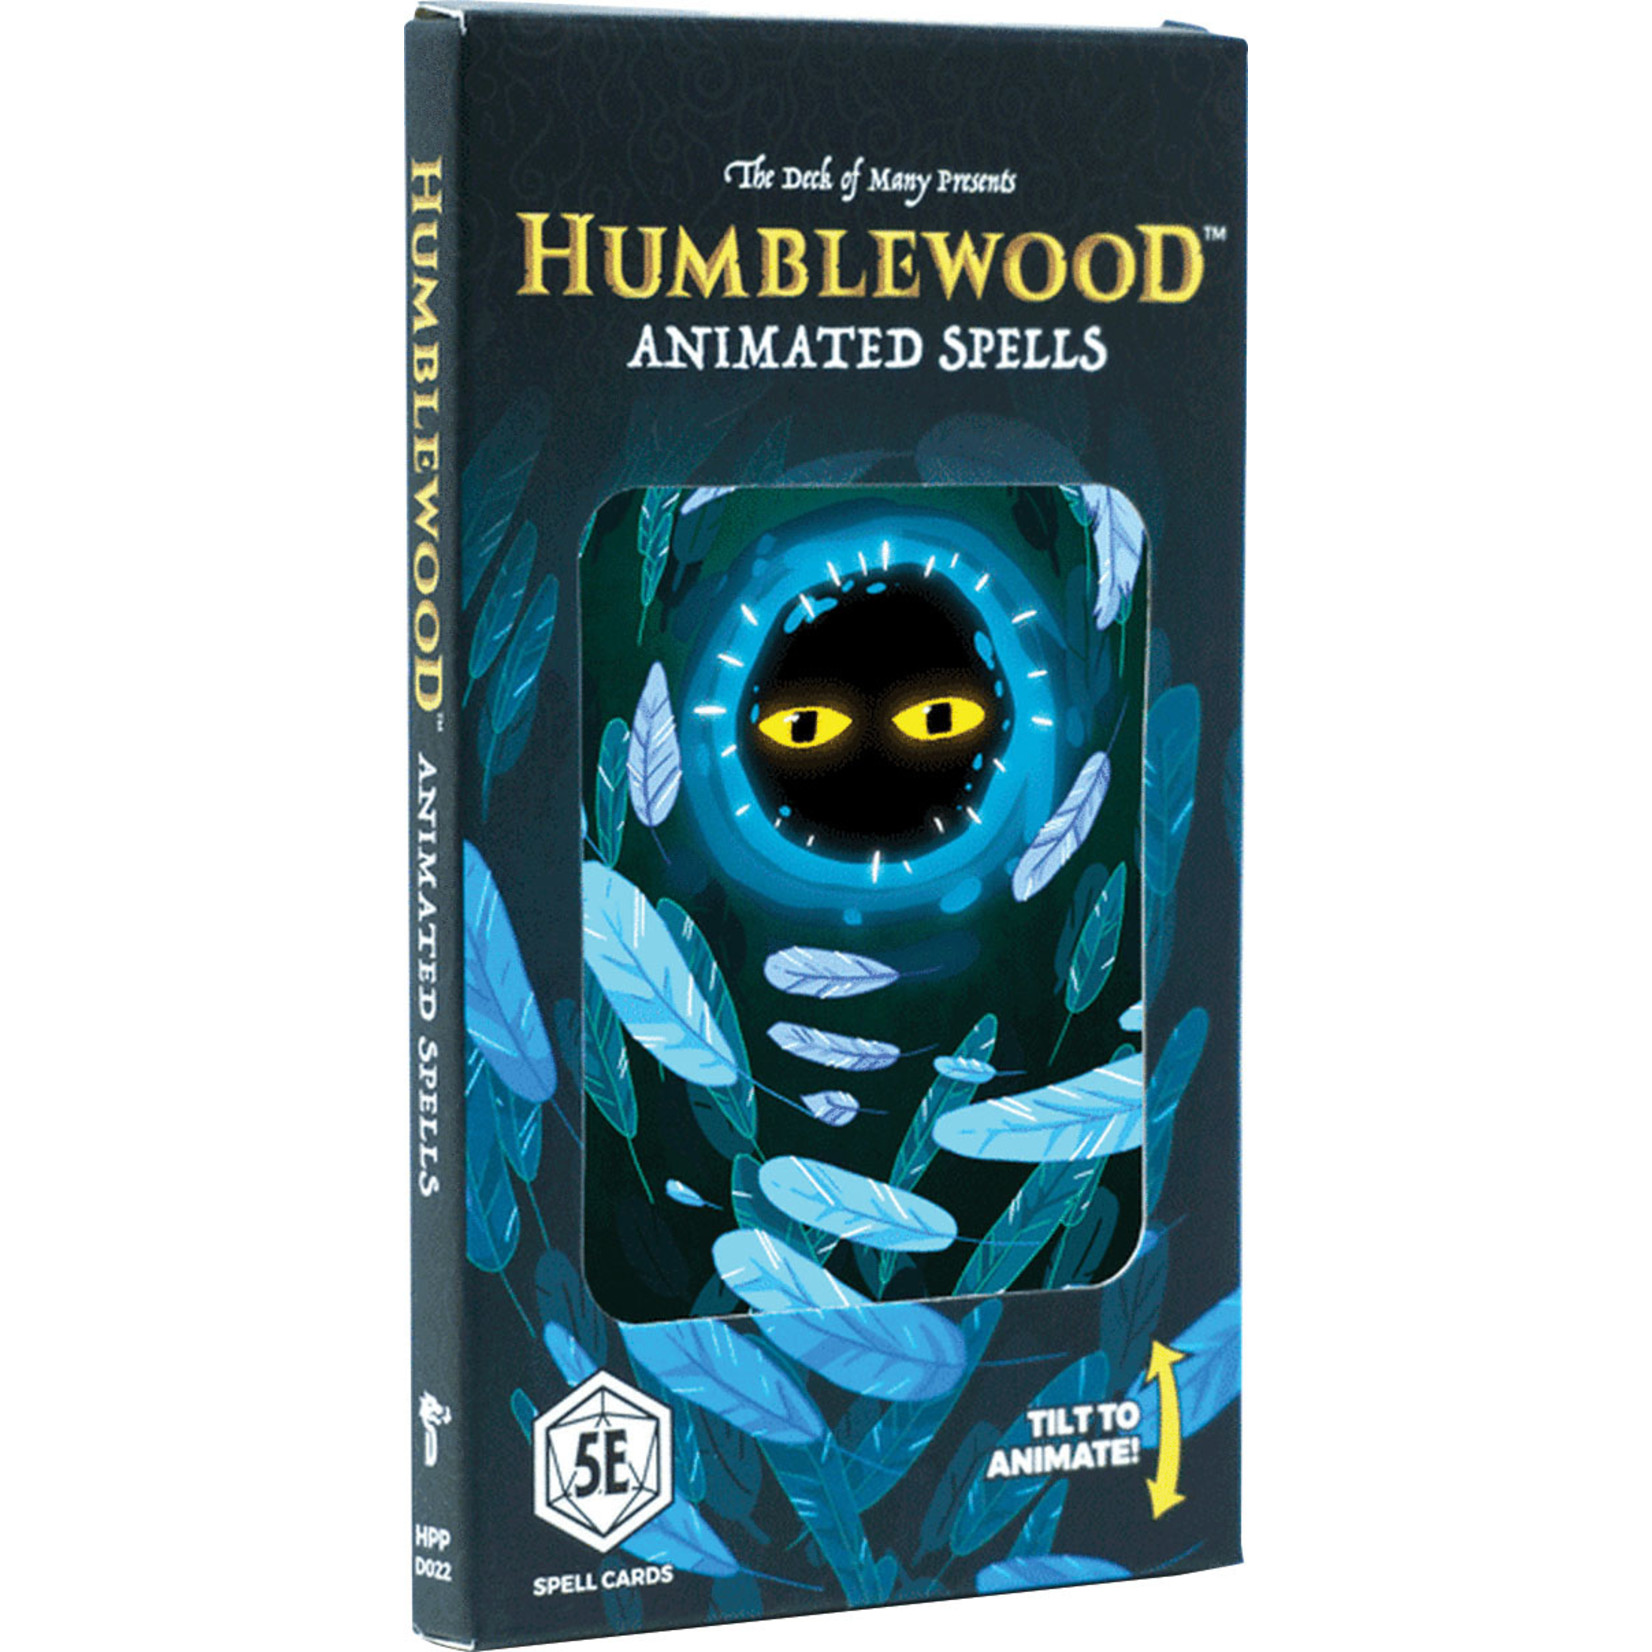 Humblewood (5E) Animated Spells